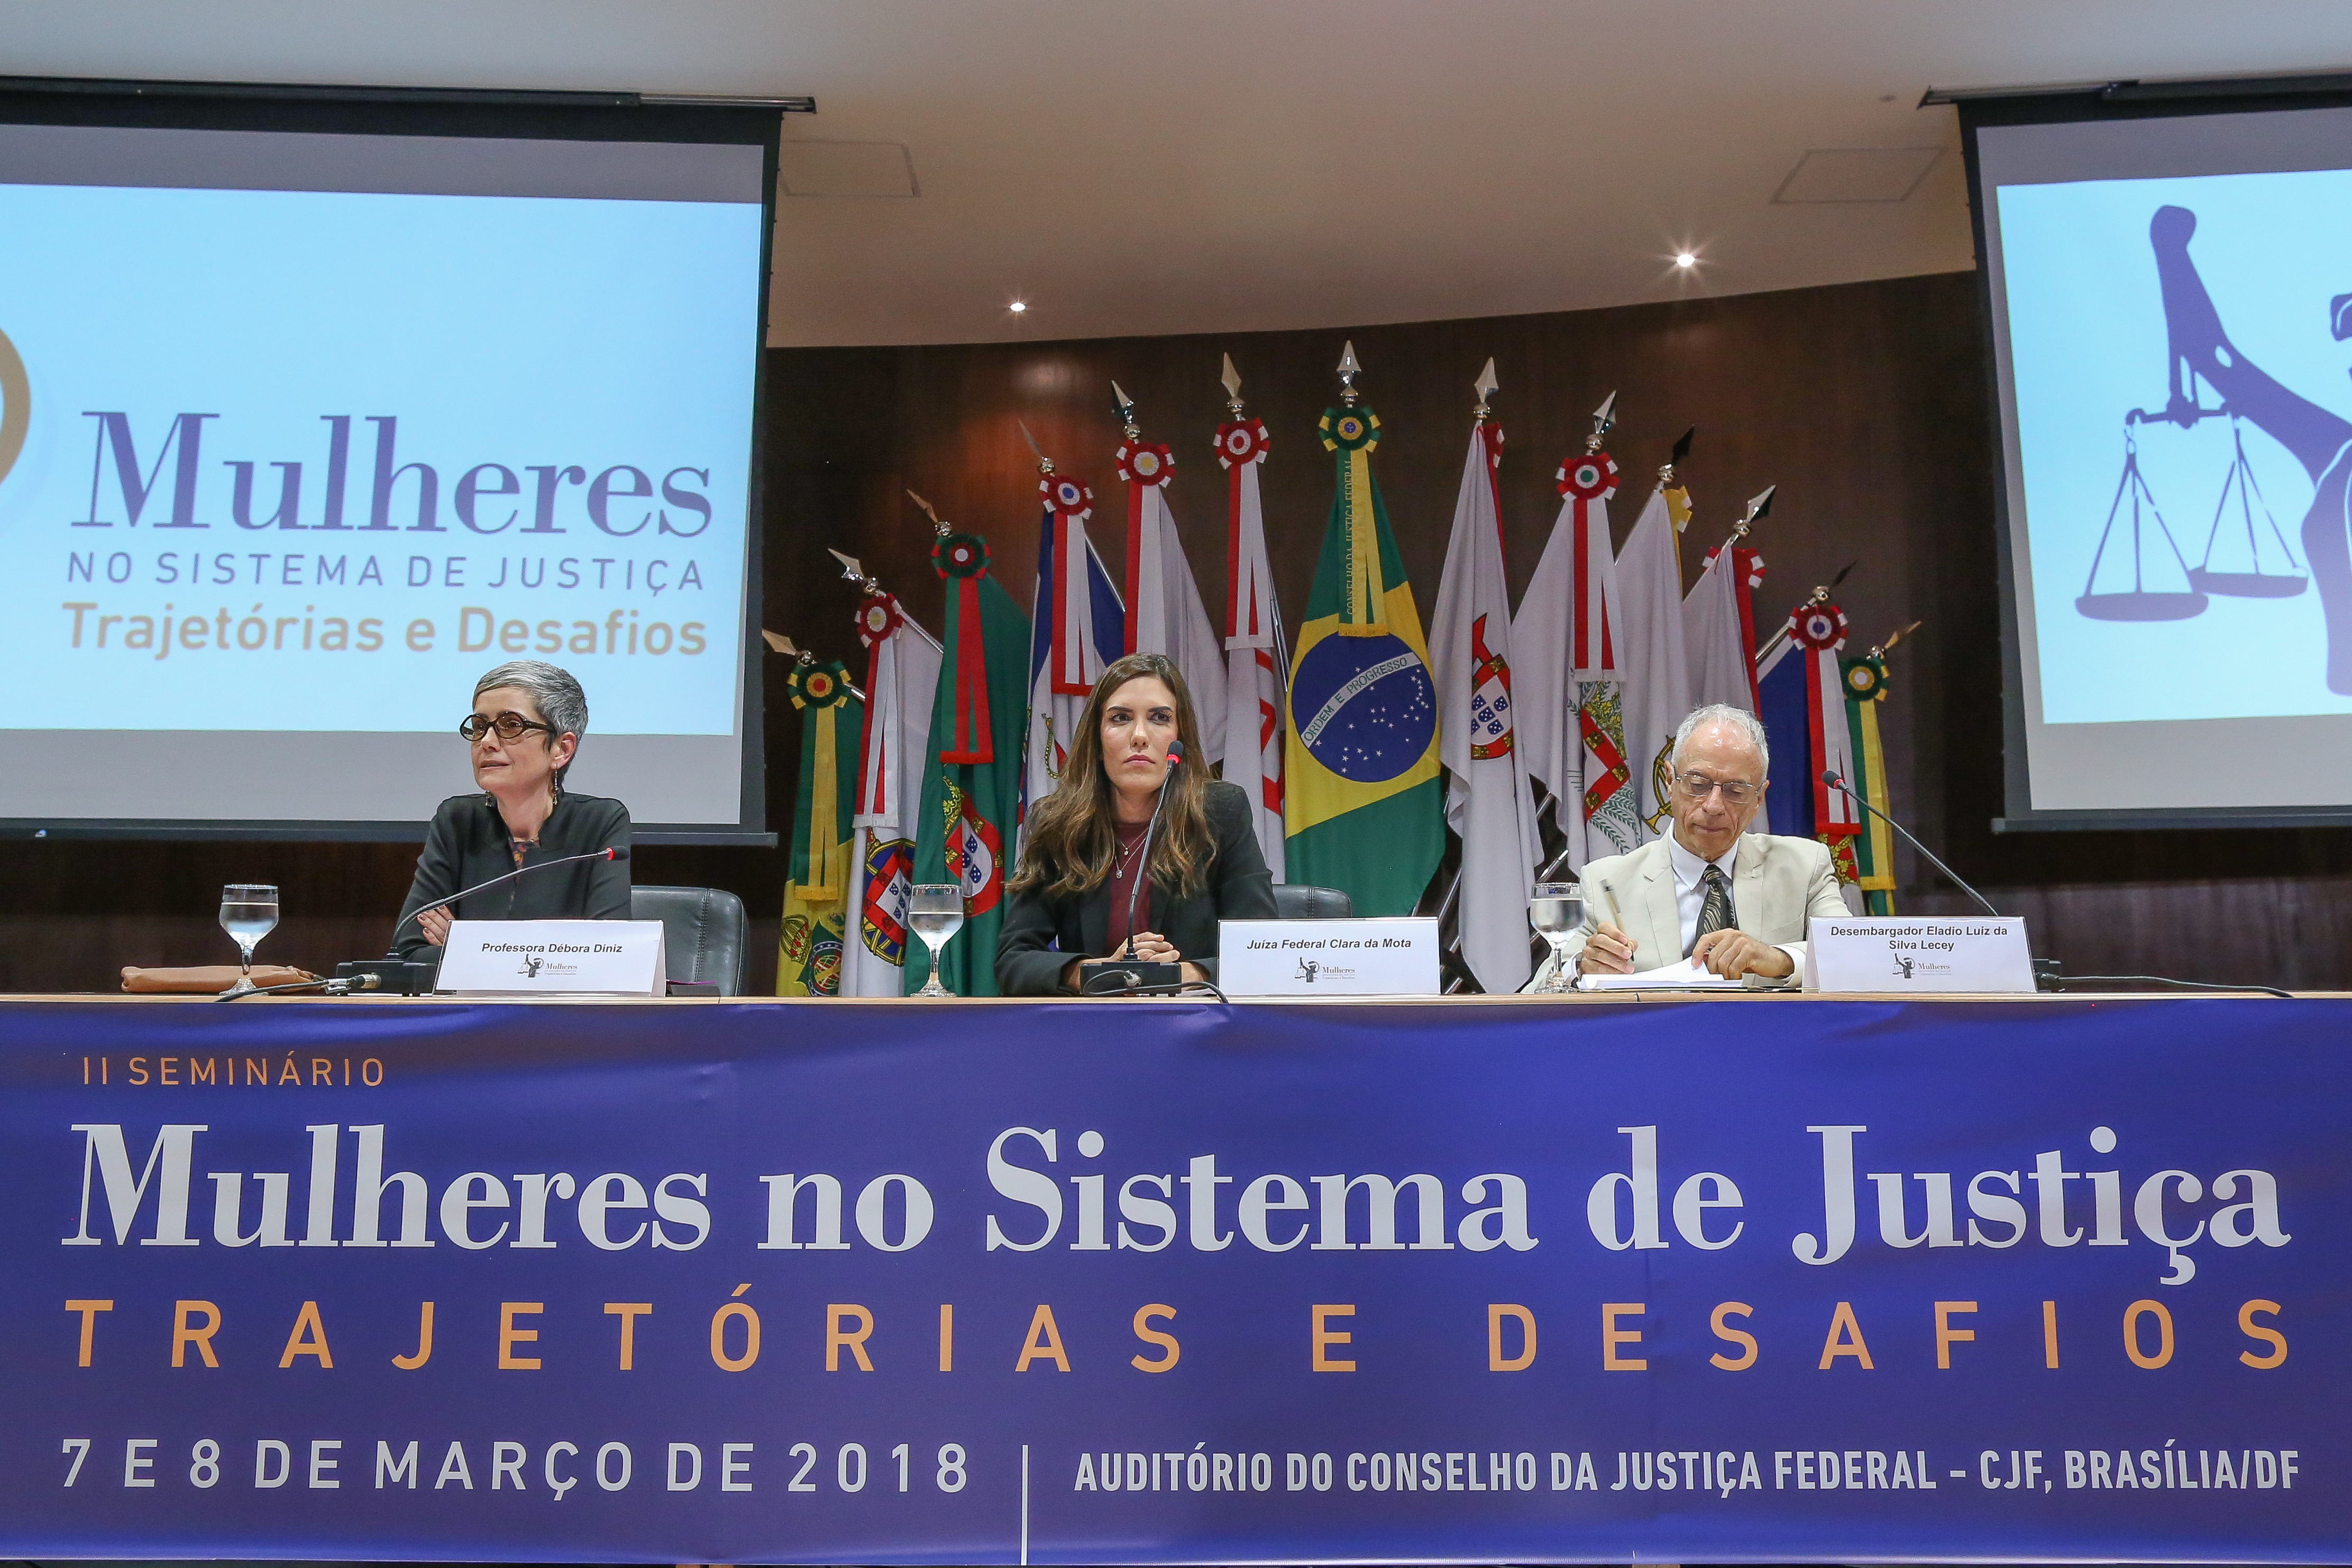 II Seminário Mulheres no Sistema de Justiça, promovido pela AJUFE, debate trajetórias e desafios para inclusão da mulher